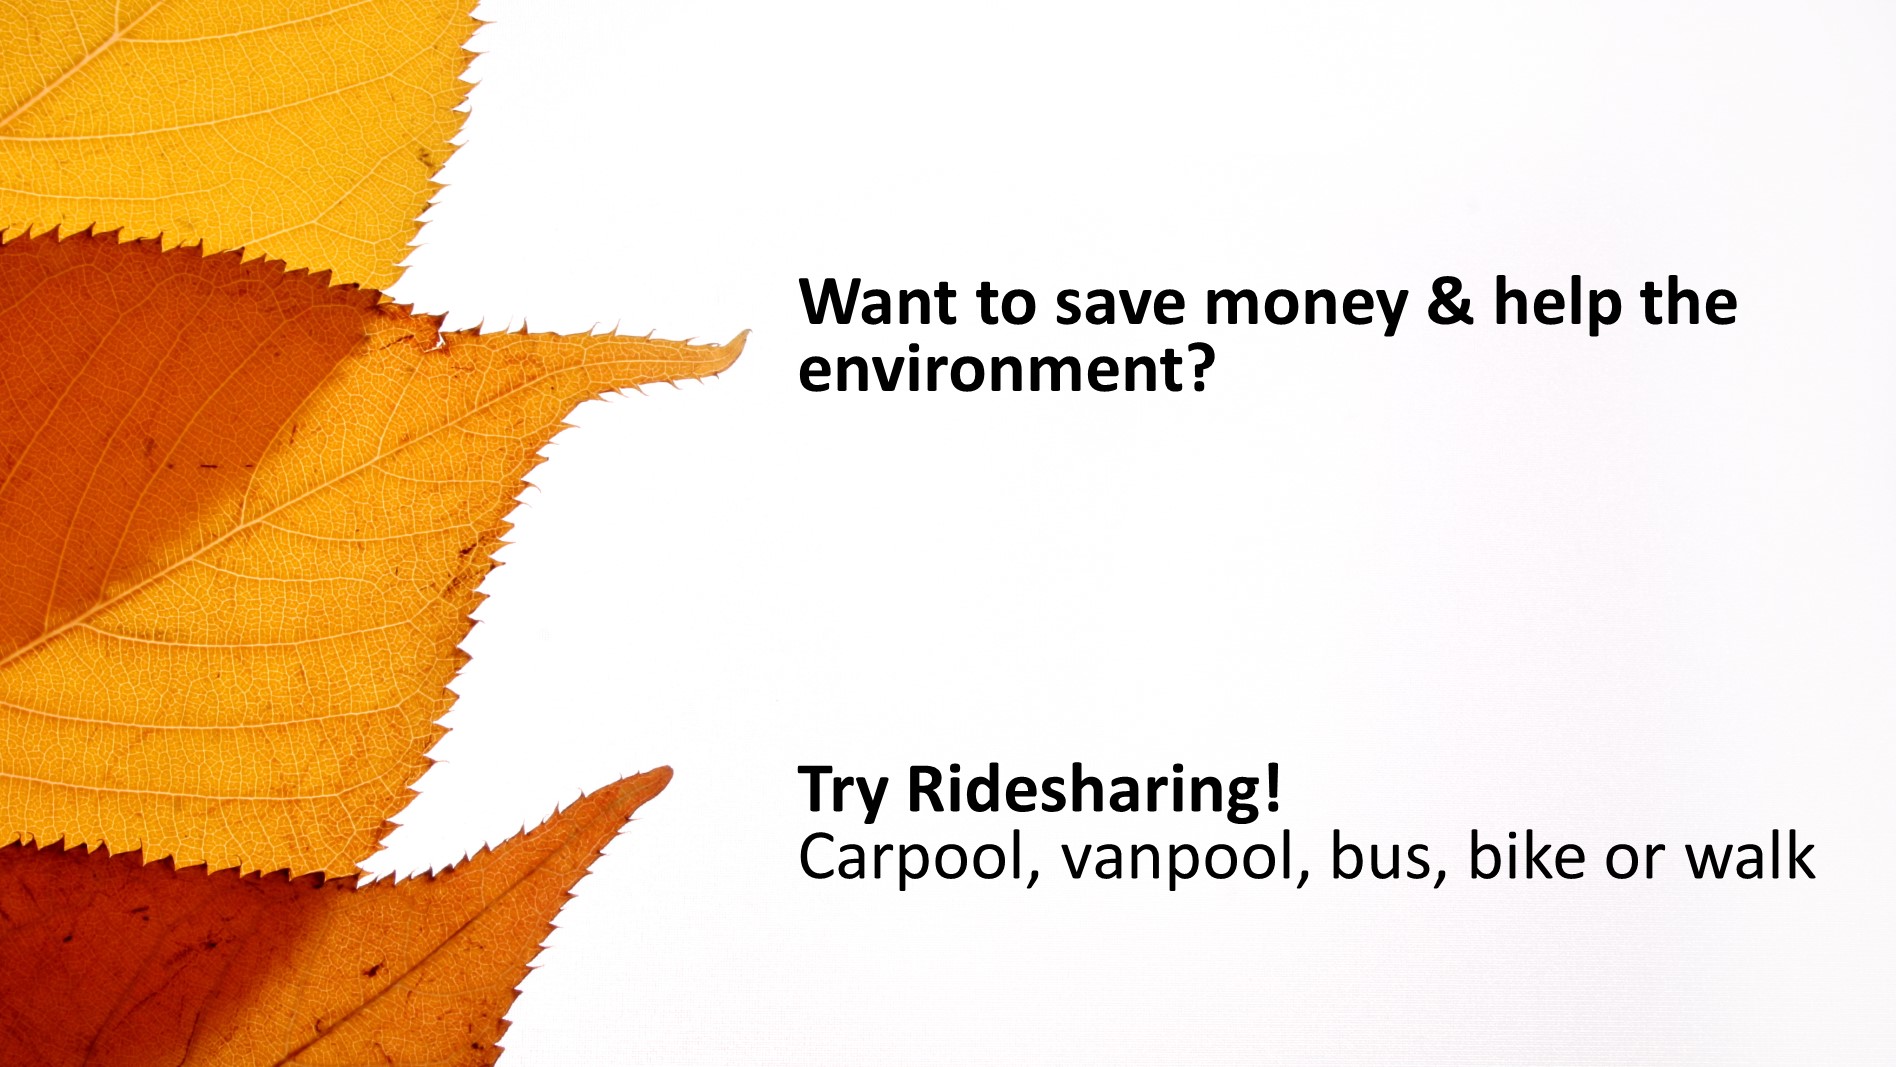 Try ridesharing